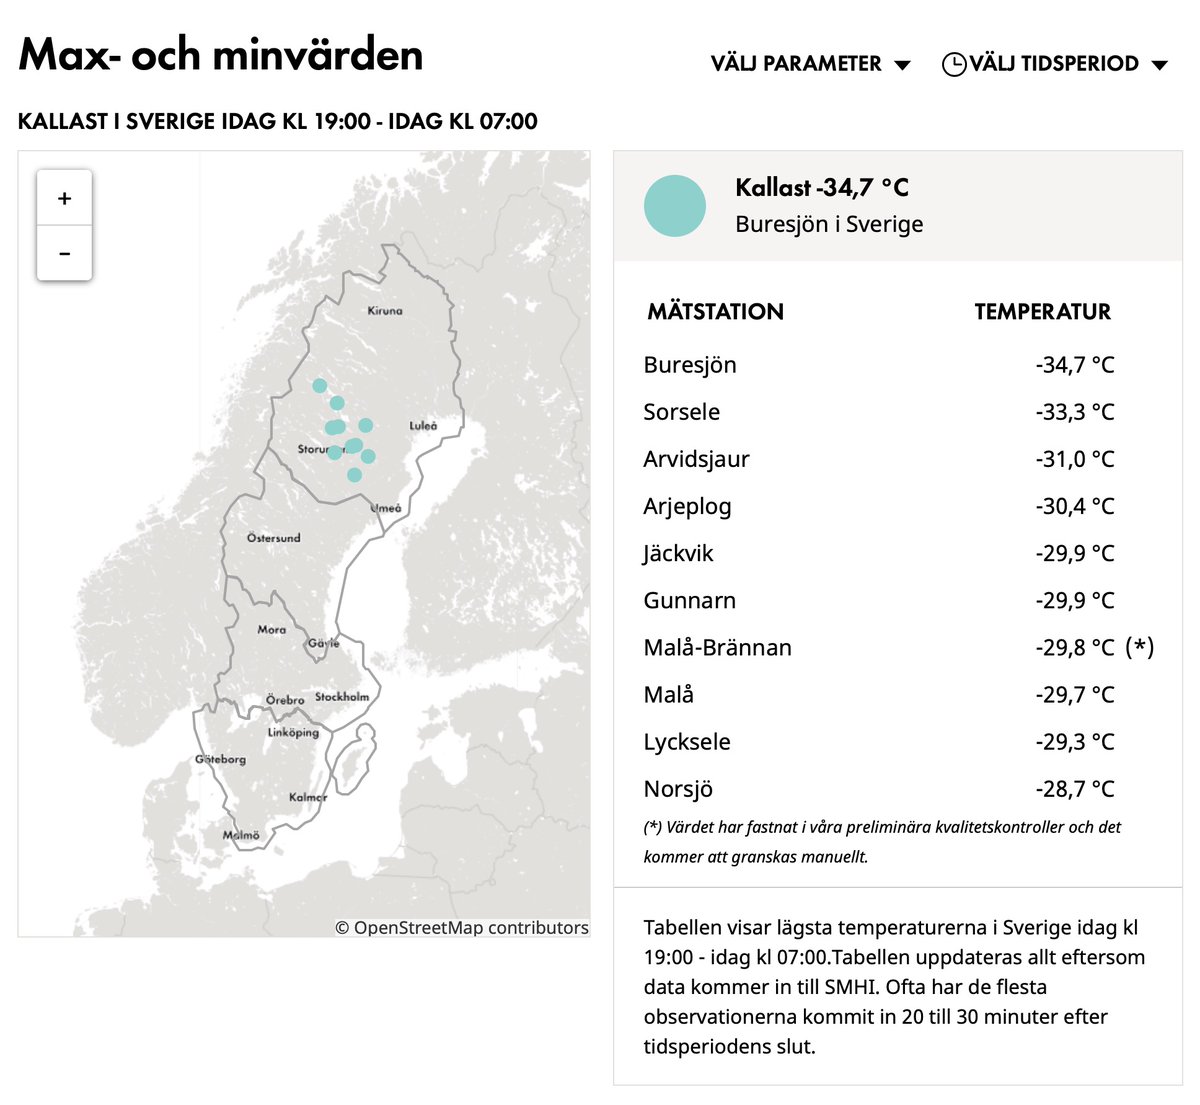 Grand froid sur le nord de l'Europe, jusqu'à près de -35°C en Suède, des températures très froides pour une fin novembre. 